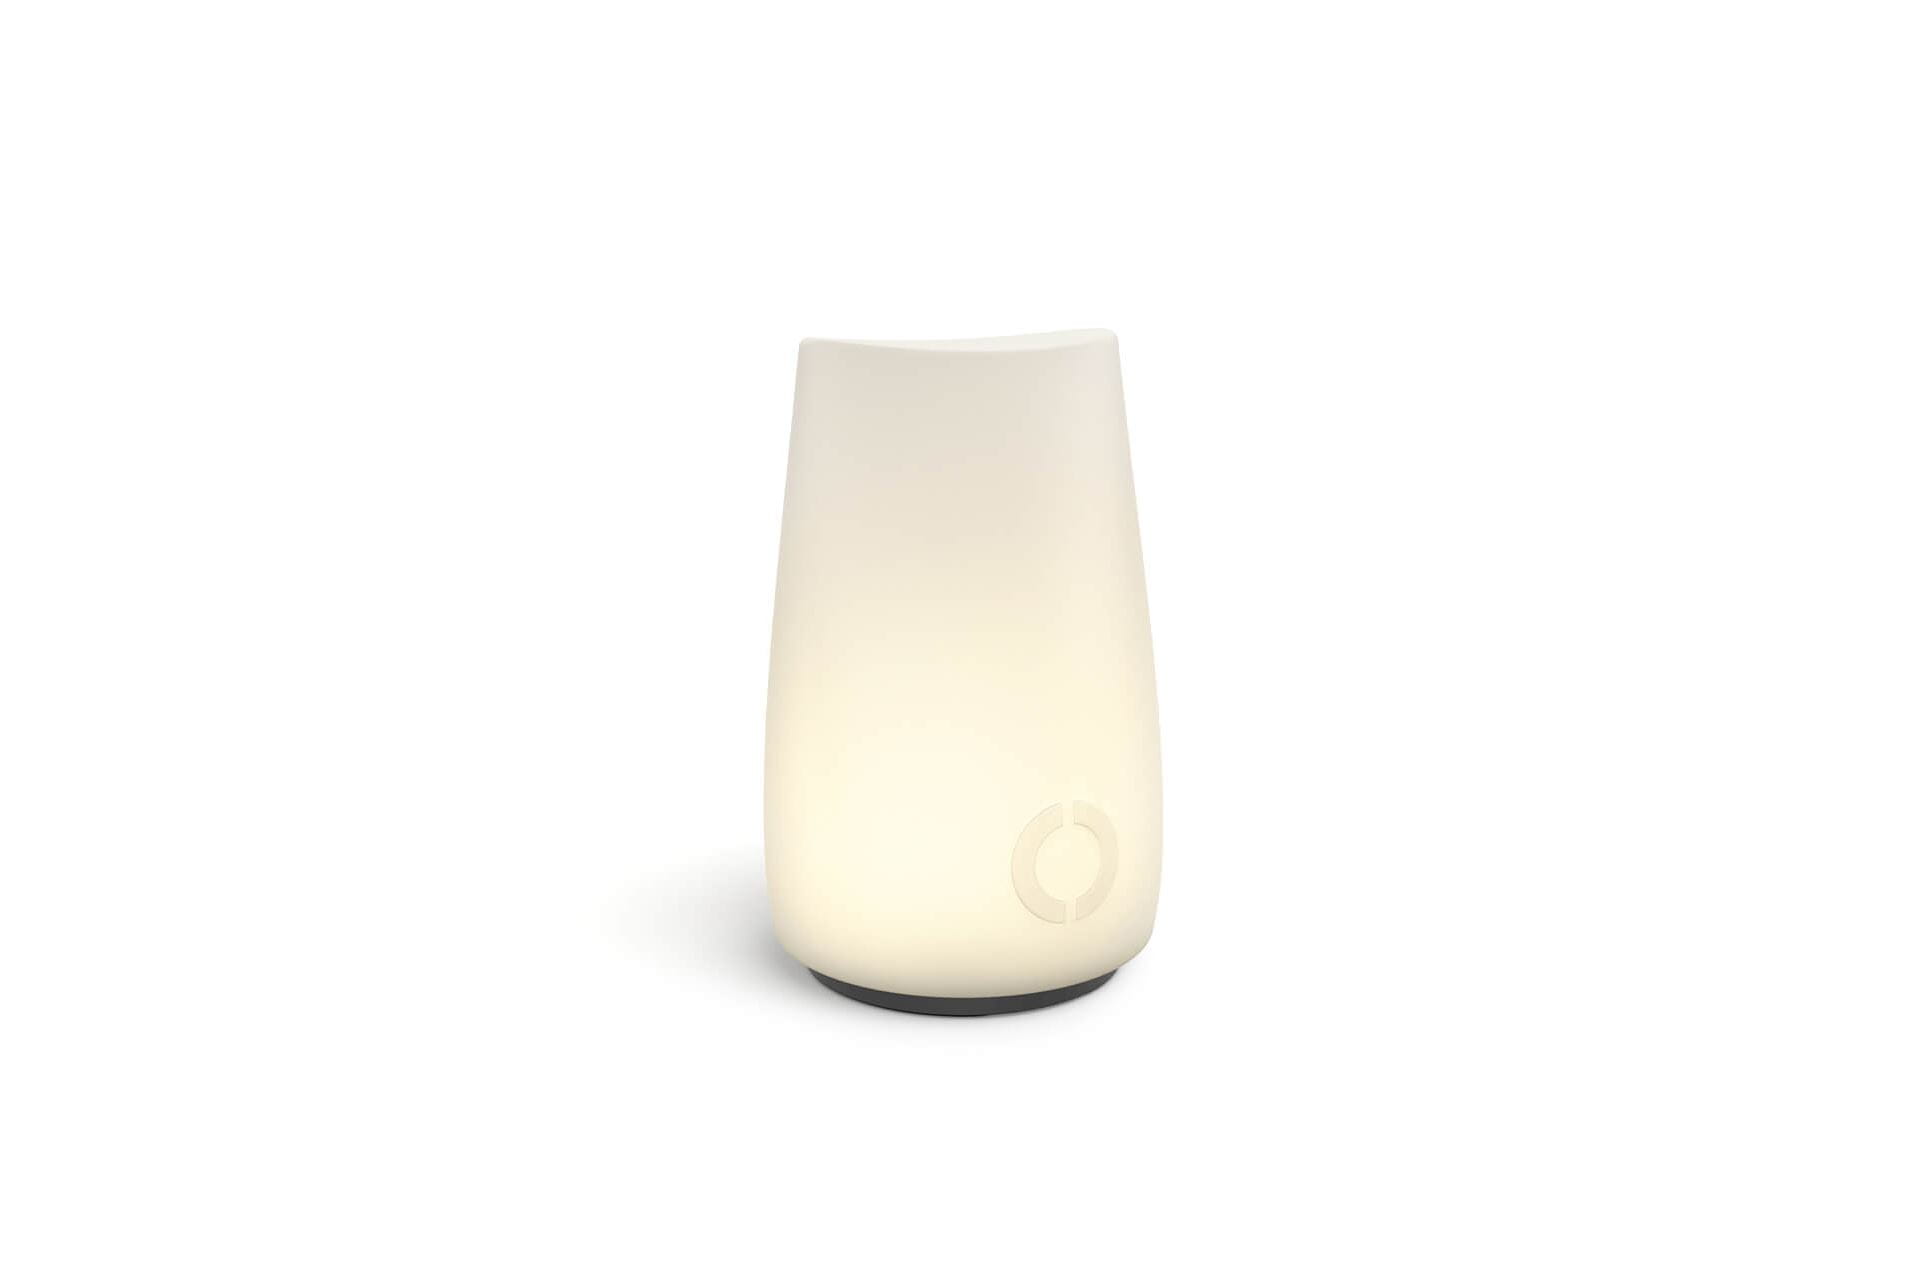 DEDON OMBII LED lamp by DEDON Studio